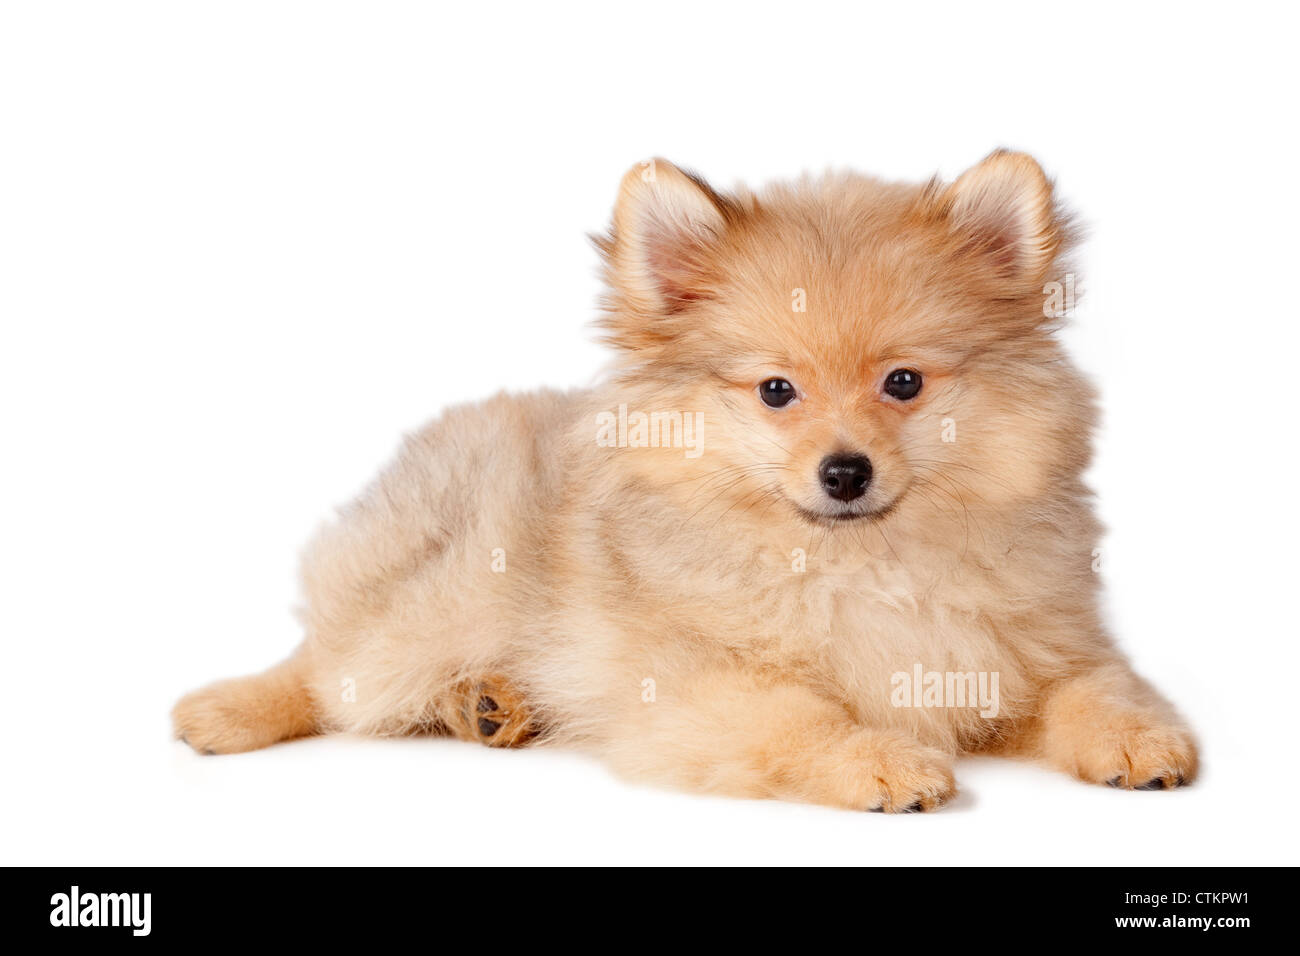 Welpe Hund Pommerschen Rasse auf einem weißen Hintergrund. Stockfoto